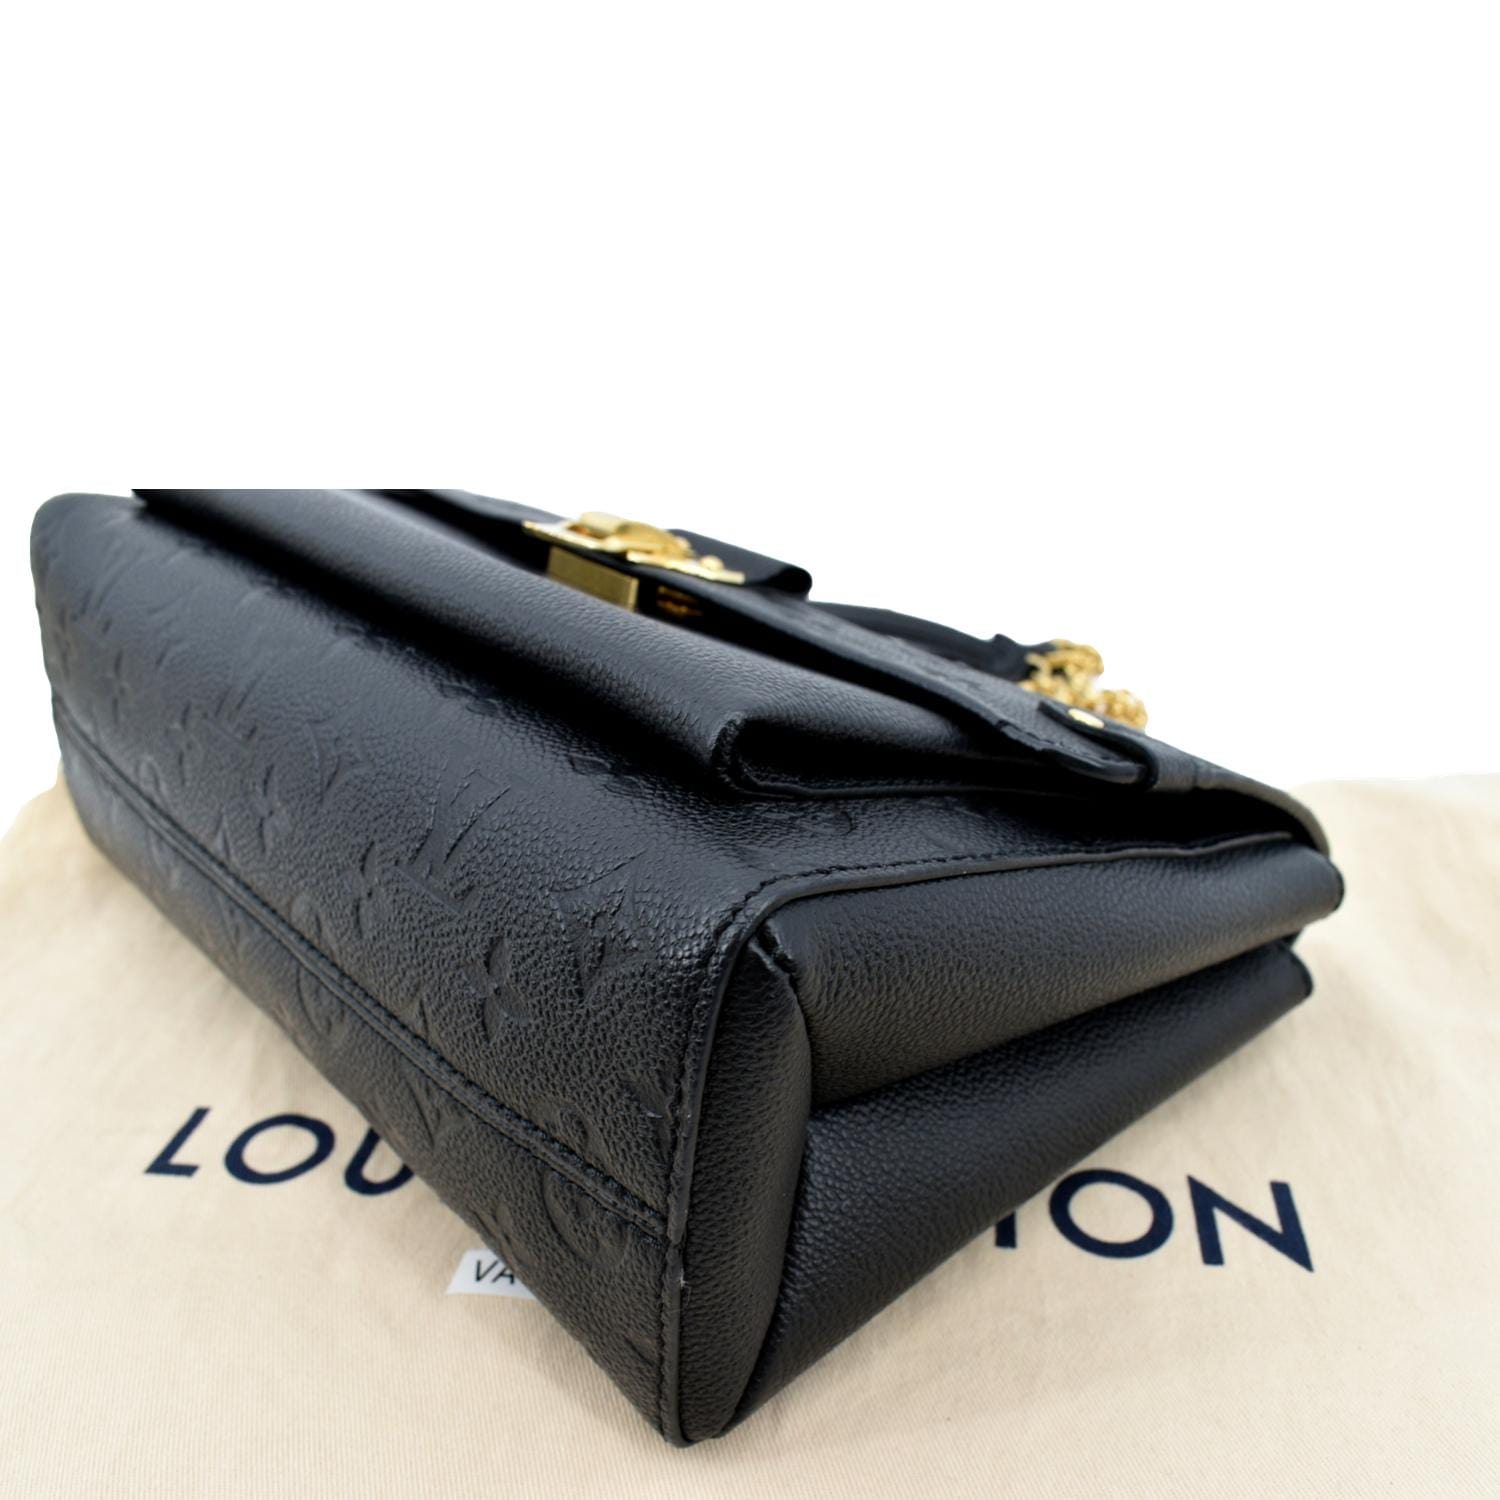 Authentic Louis Vuitton Vavin PM Navy/Red Empreinte Shoulder Bag M52271